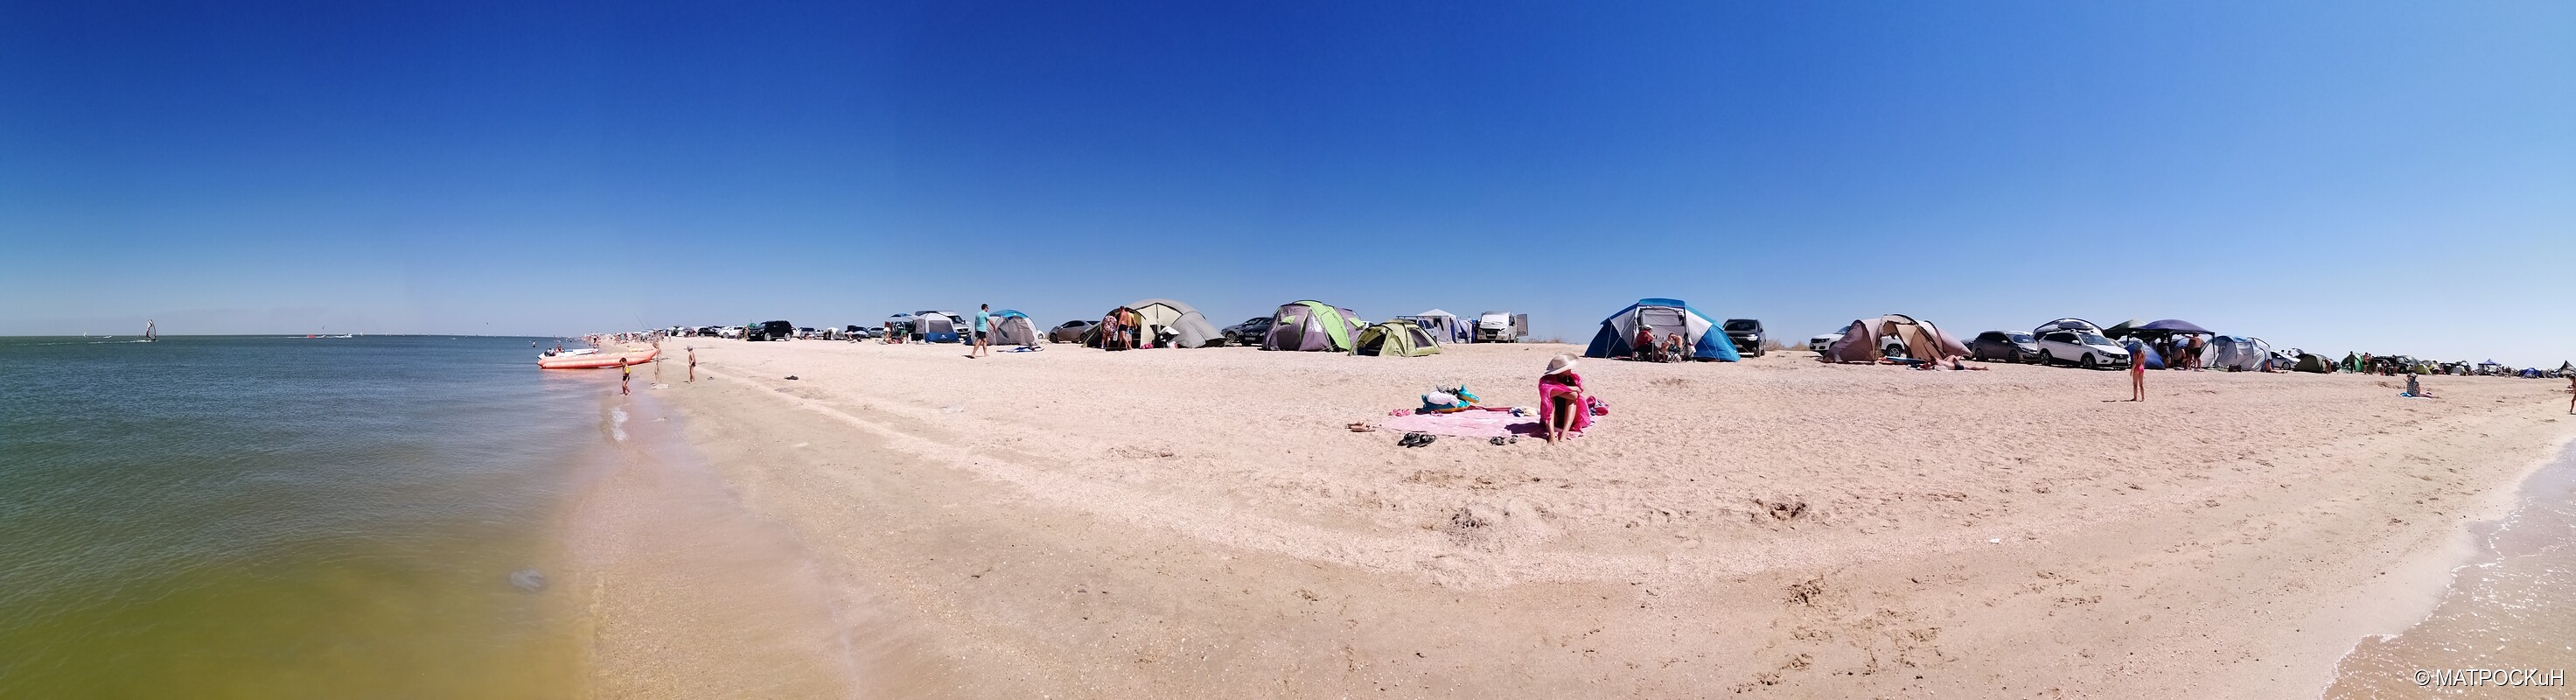 Фотографии -> Поездки -> Отпуск в Должанской (1 - 23 августа 2020) ->  На пляже -> На пляже - 021